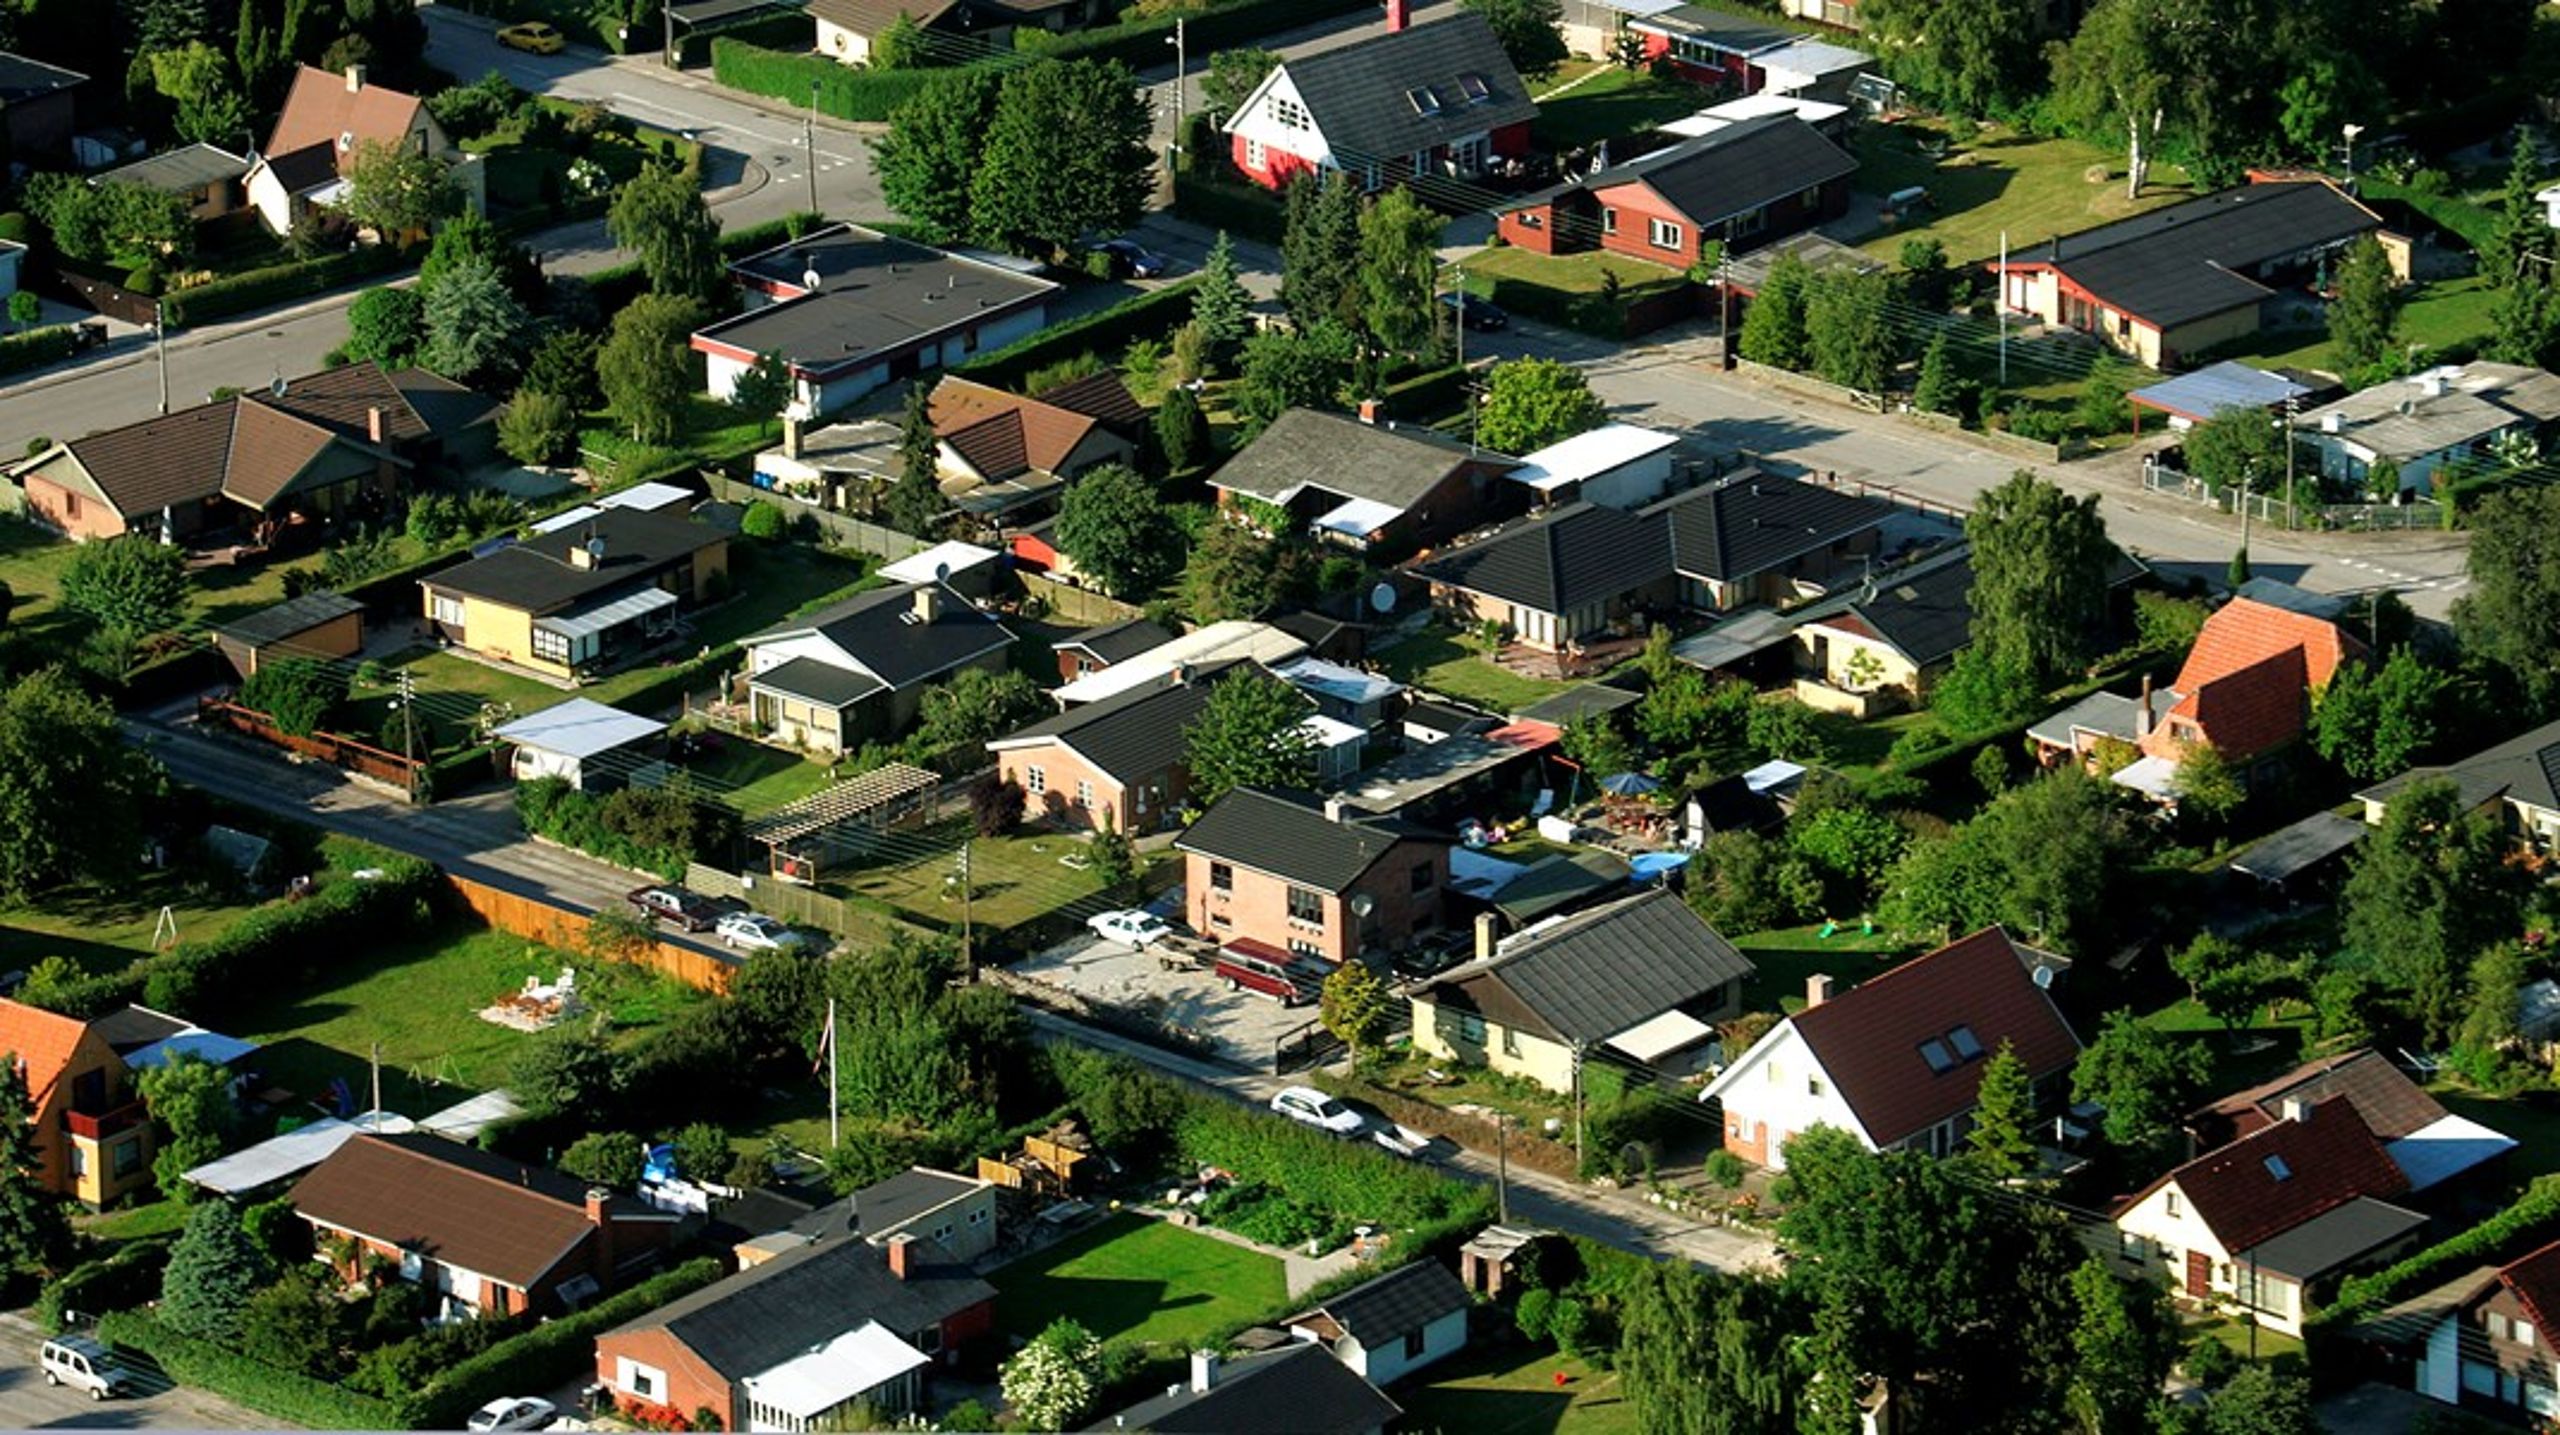 Kommuner kan starte samtalen om, at den gode bolig sagtens kan være meget mindre end de 213 m2, som et gennemsnitligt, nybygget parcelhus er i dag, skriver Nethe Veje Laursen.